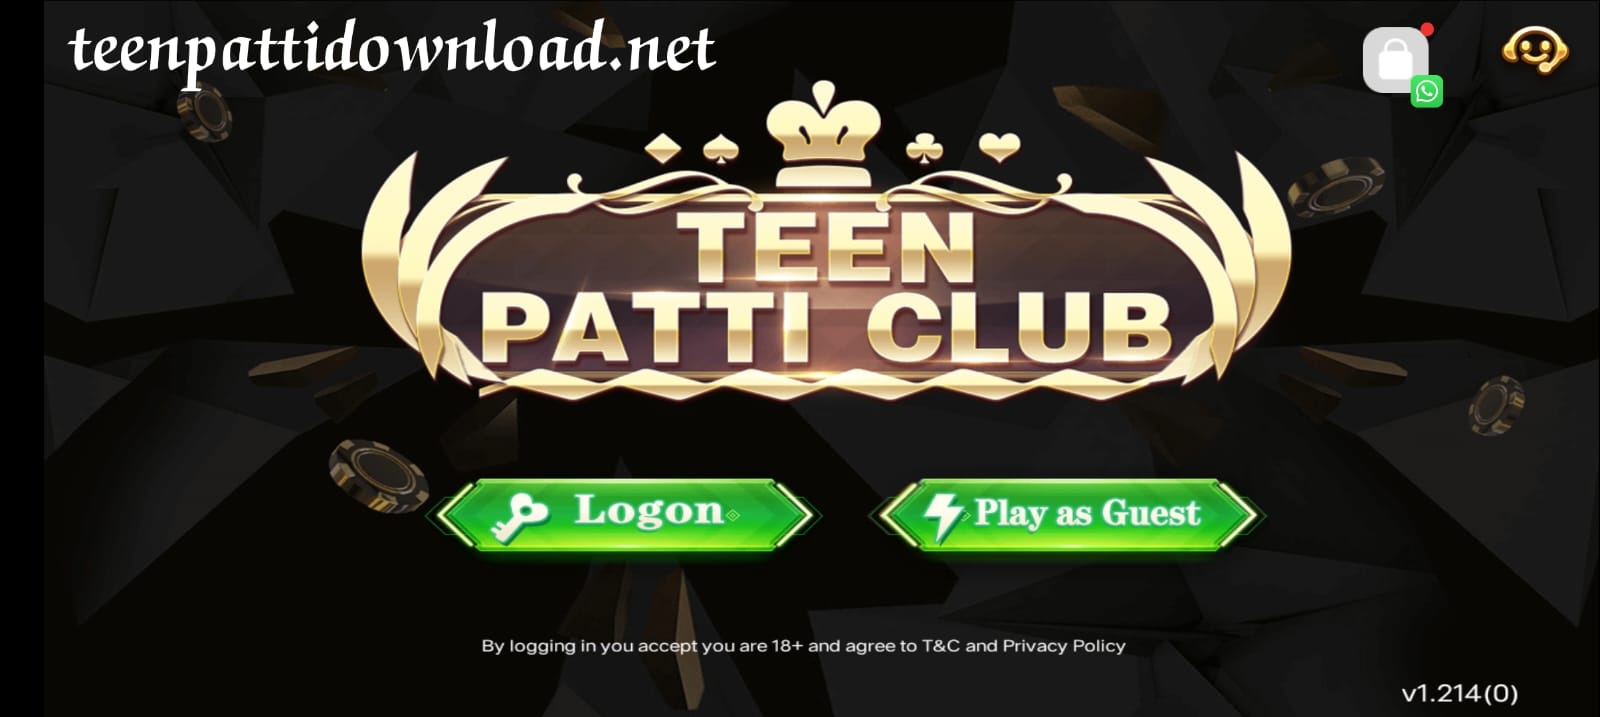 Create An Account In 3 Patti Club Application